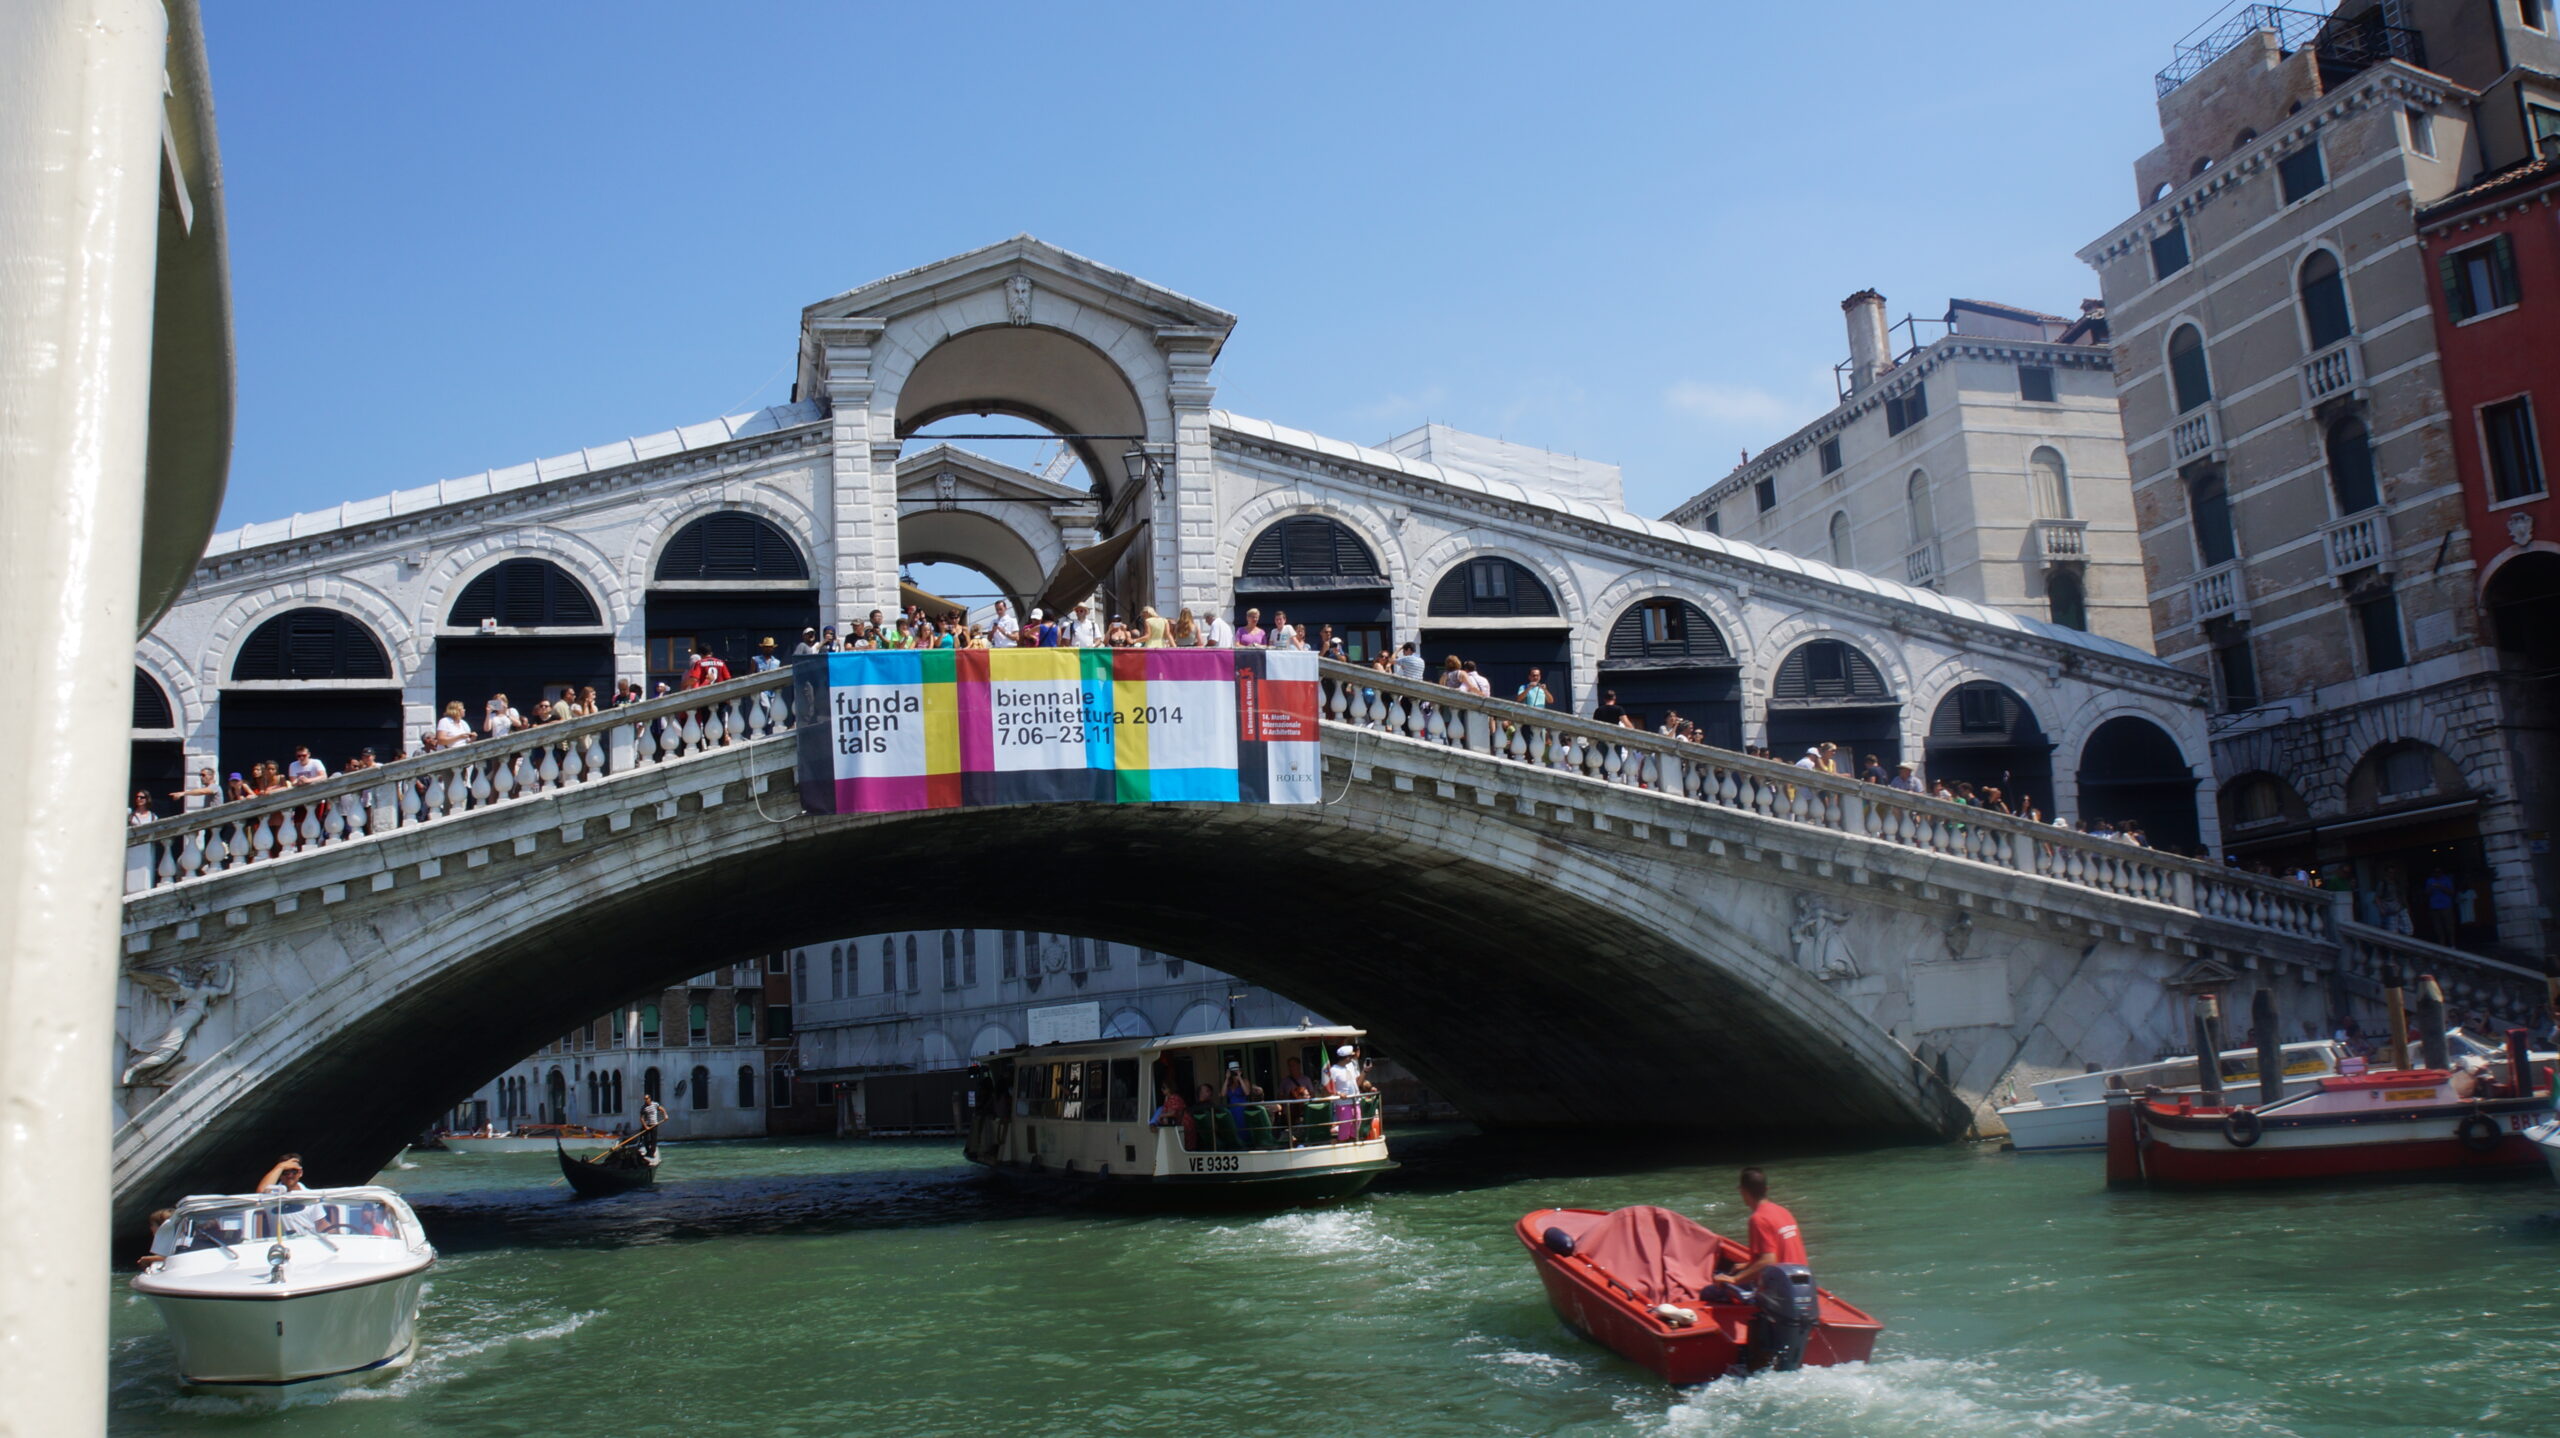 venedik te büyük kanal olarak adlandırılan geçişte rialto köprüsünün altından geçiyoruz